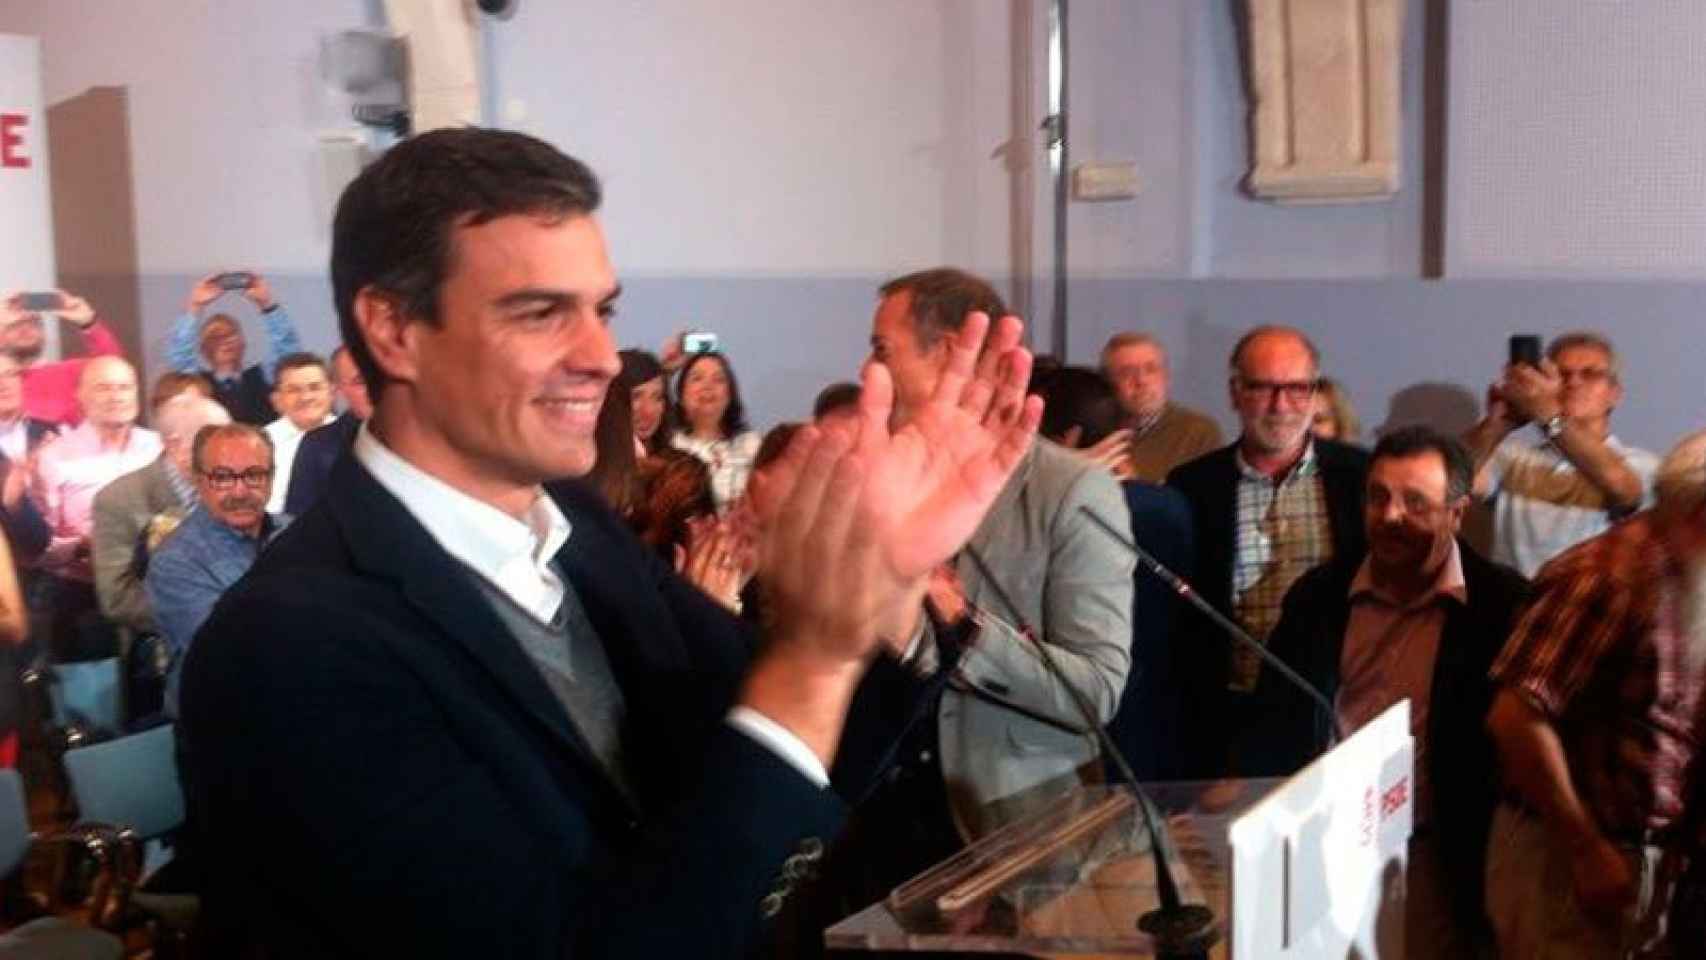 Pedro Sánchez en la presentación de las listas del PSOE por Burgos al Congreso y al Senado.